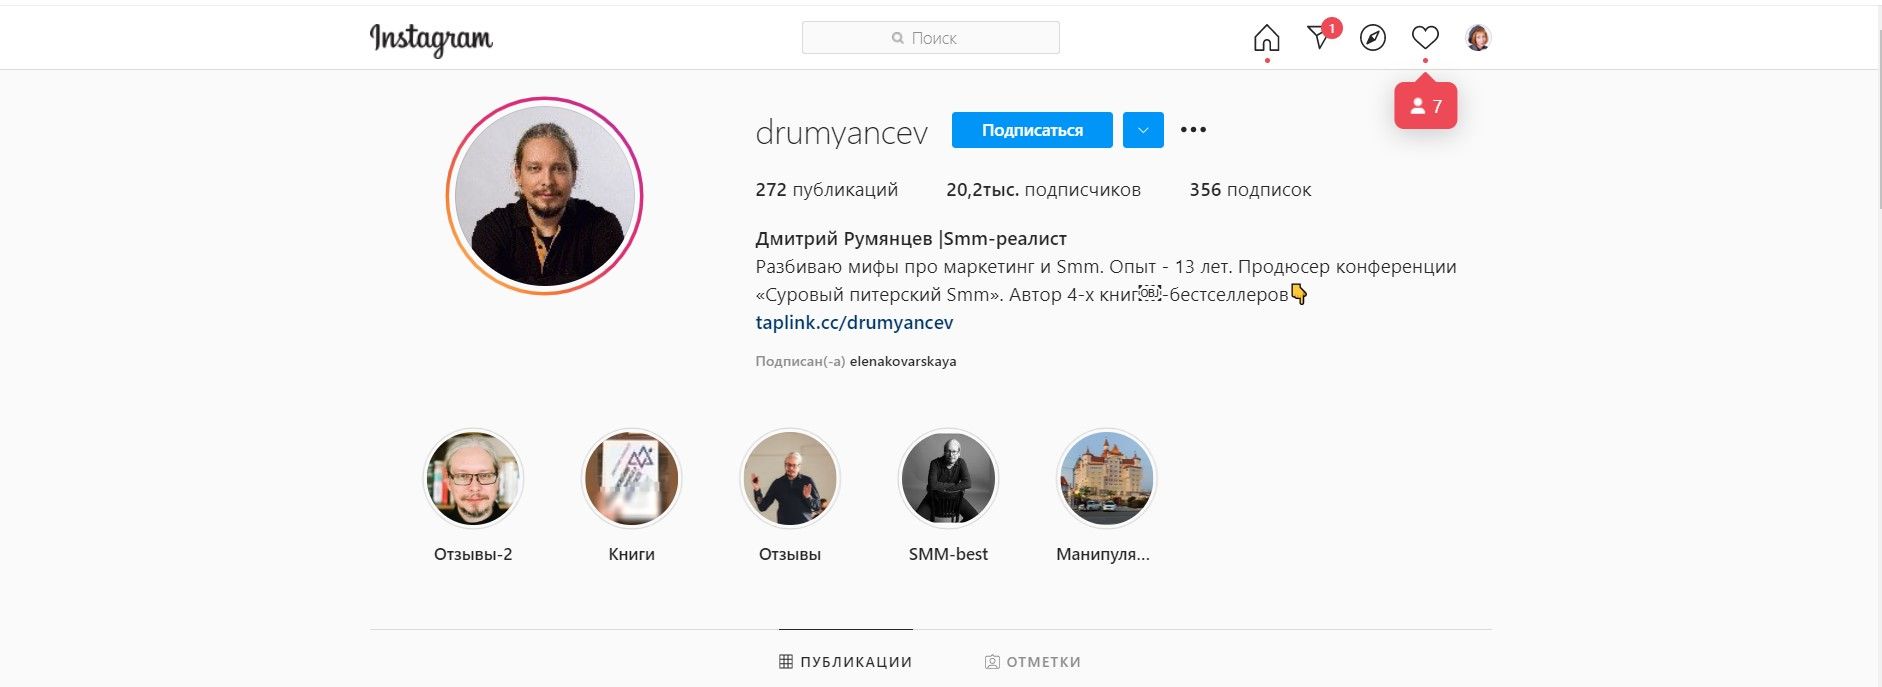 И во ВКонтакте, и в Инстаграме* тысячи людей подписываются на Дмитрия Румянцева